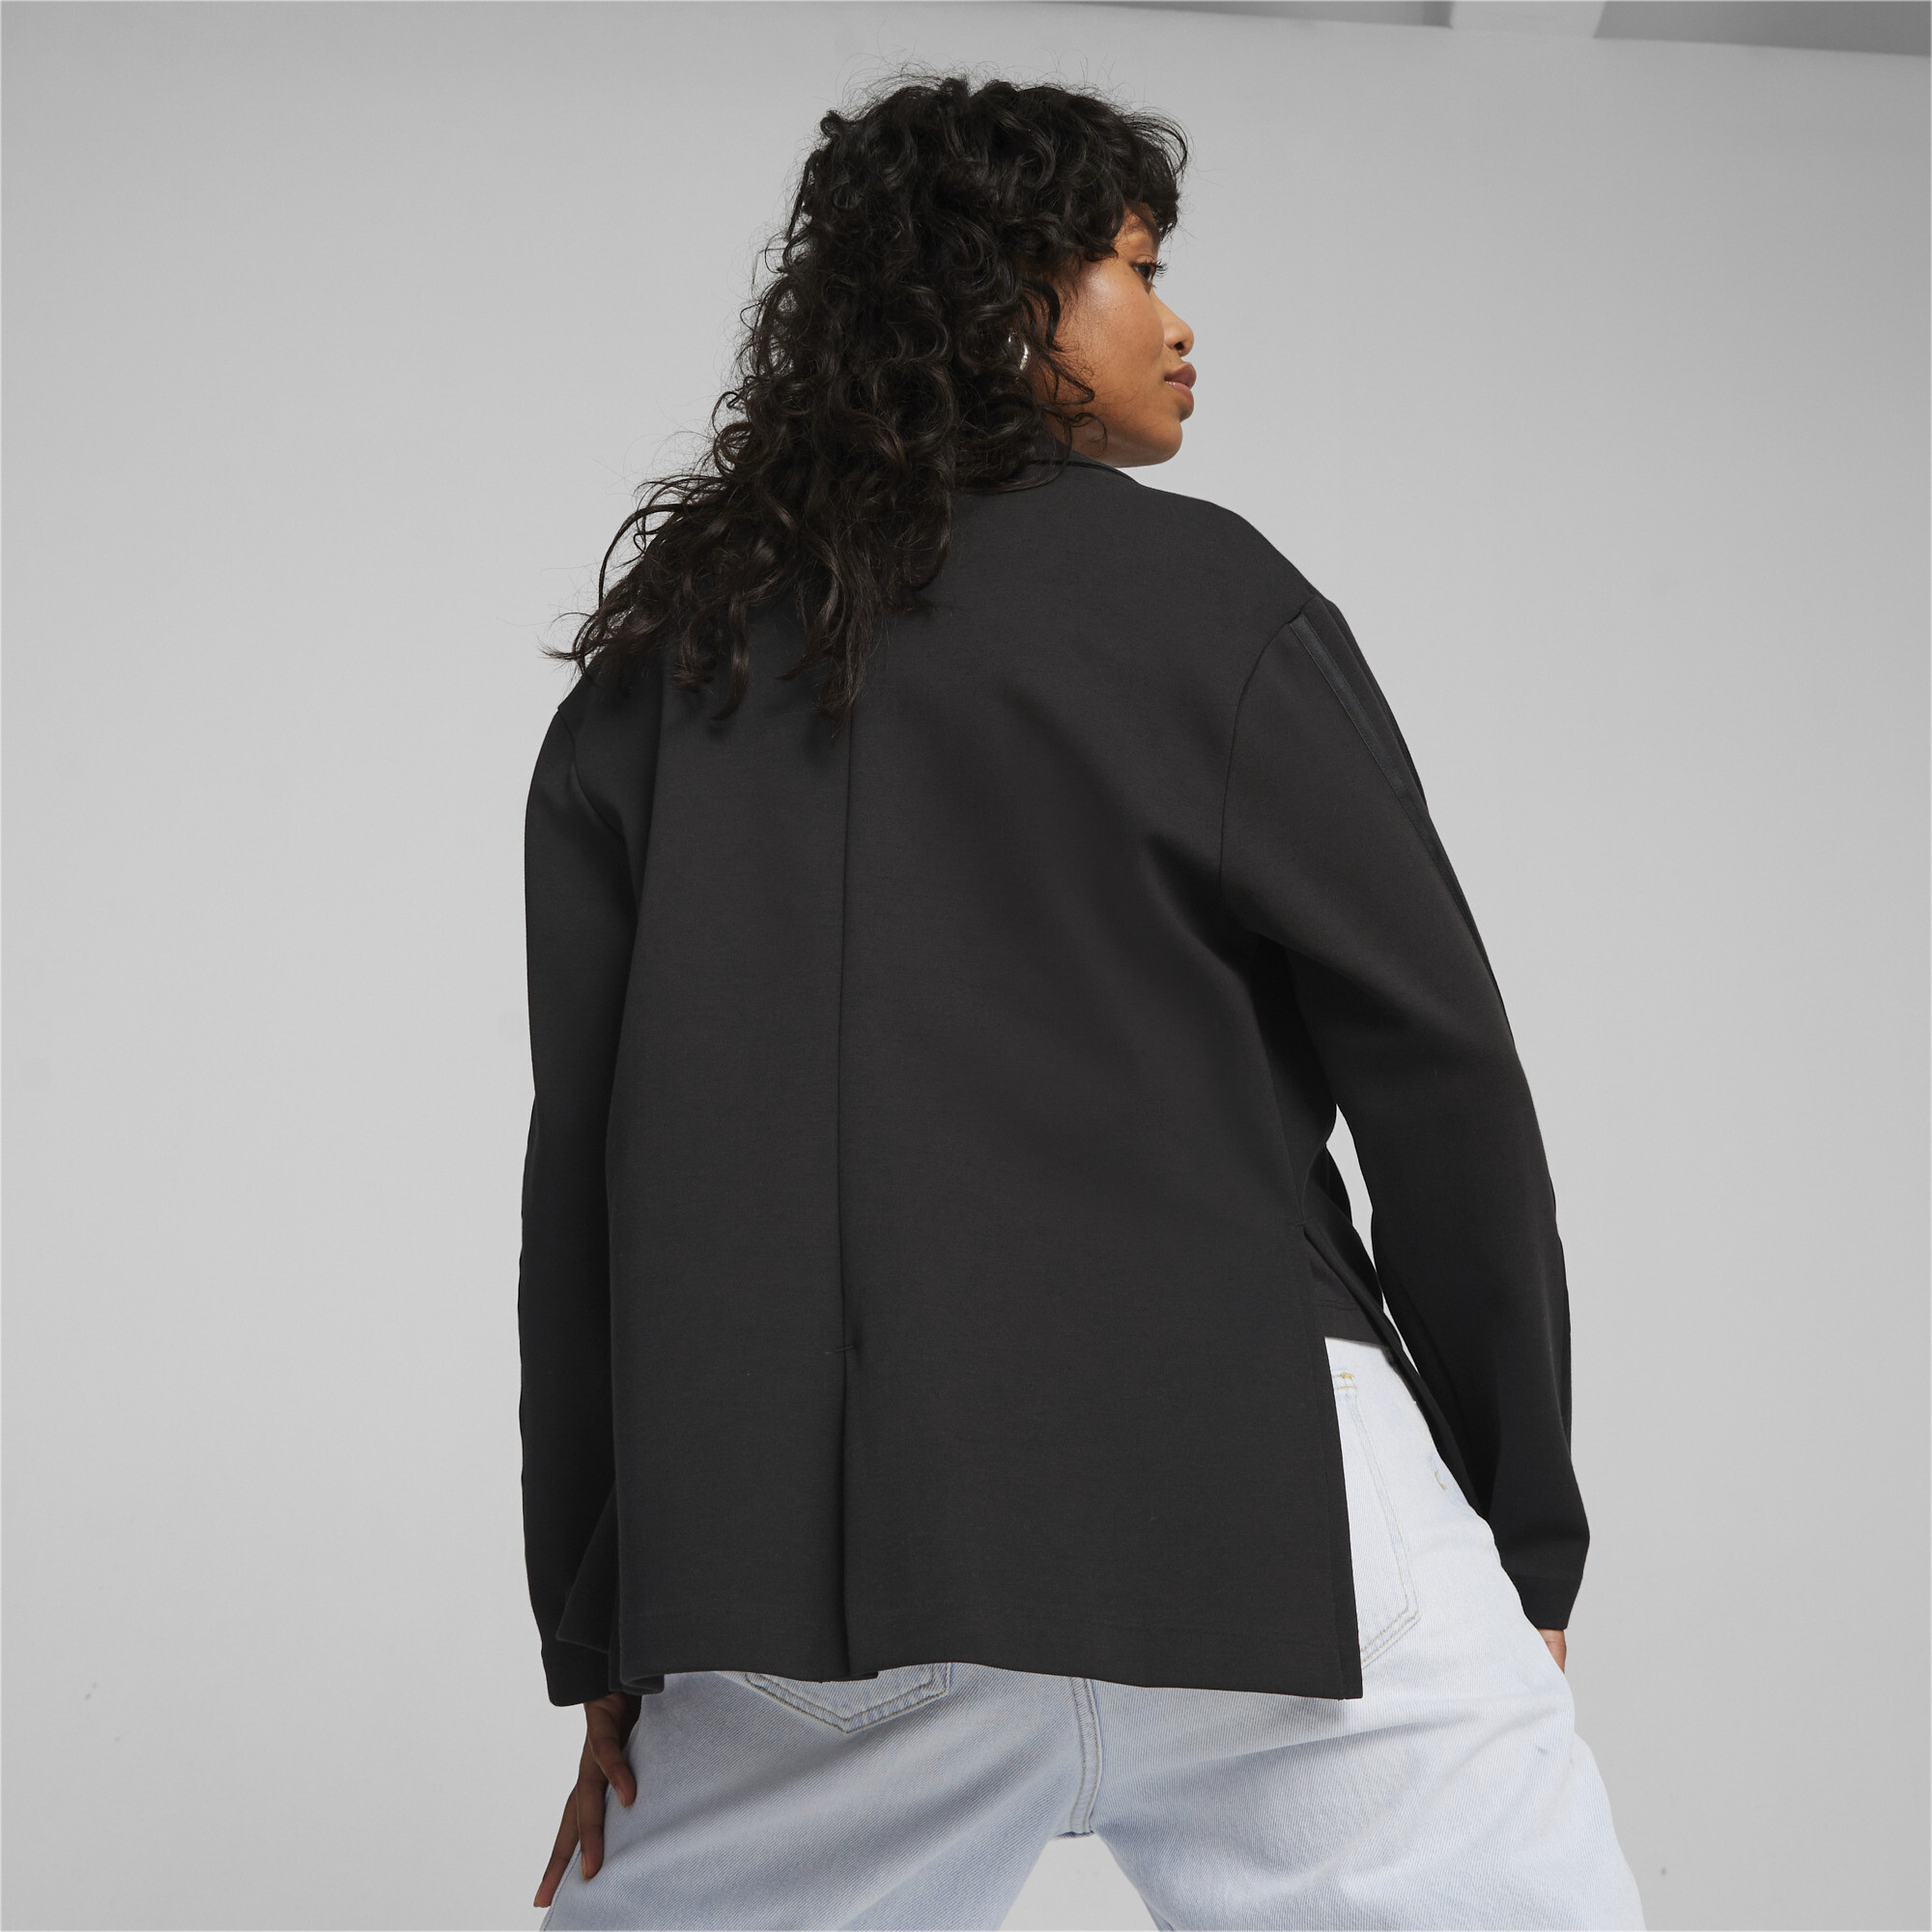 Women's PUMA T7 Blazer Women In Black, Size Large